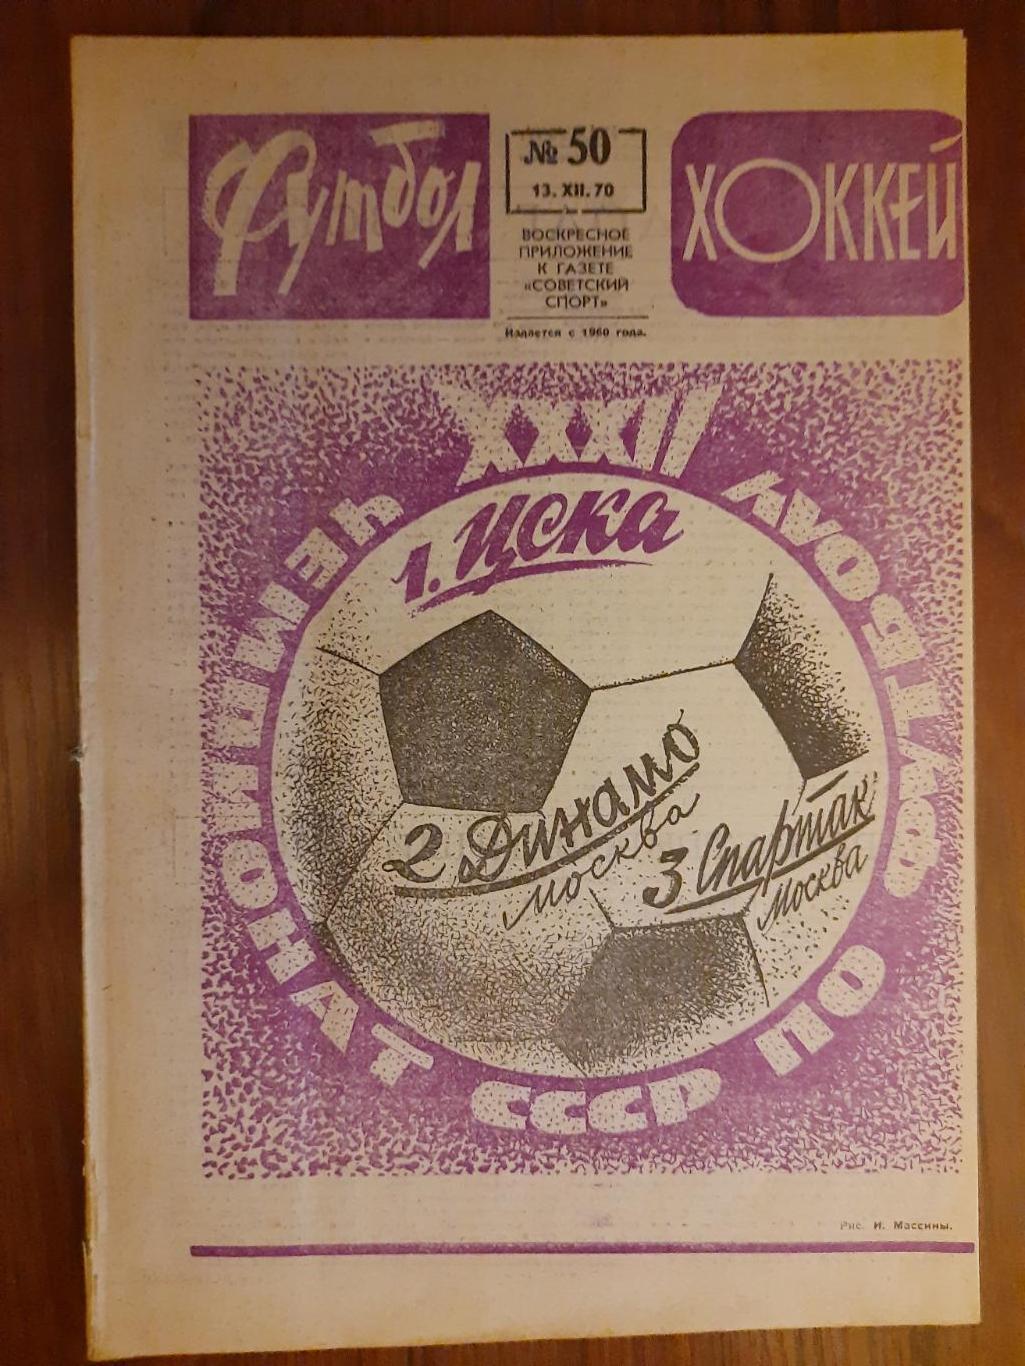 еженедельник футбол-хоккей #50, 1970